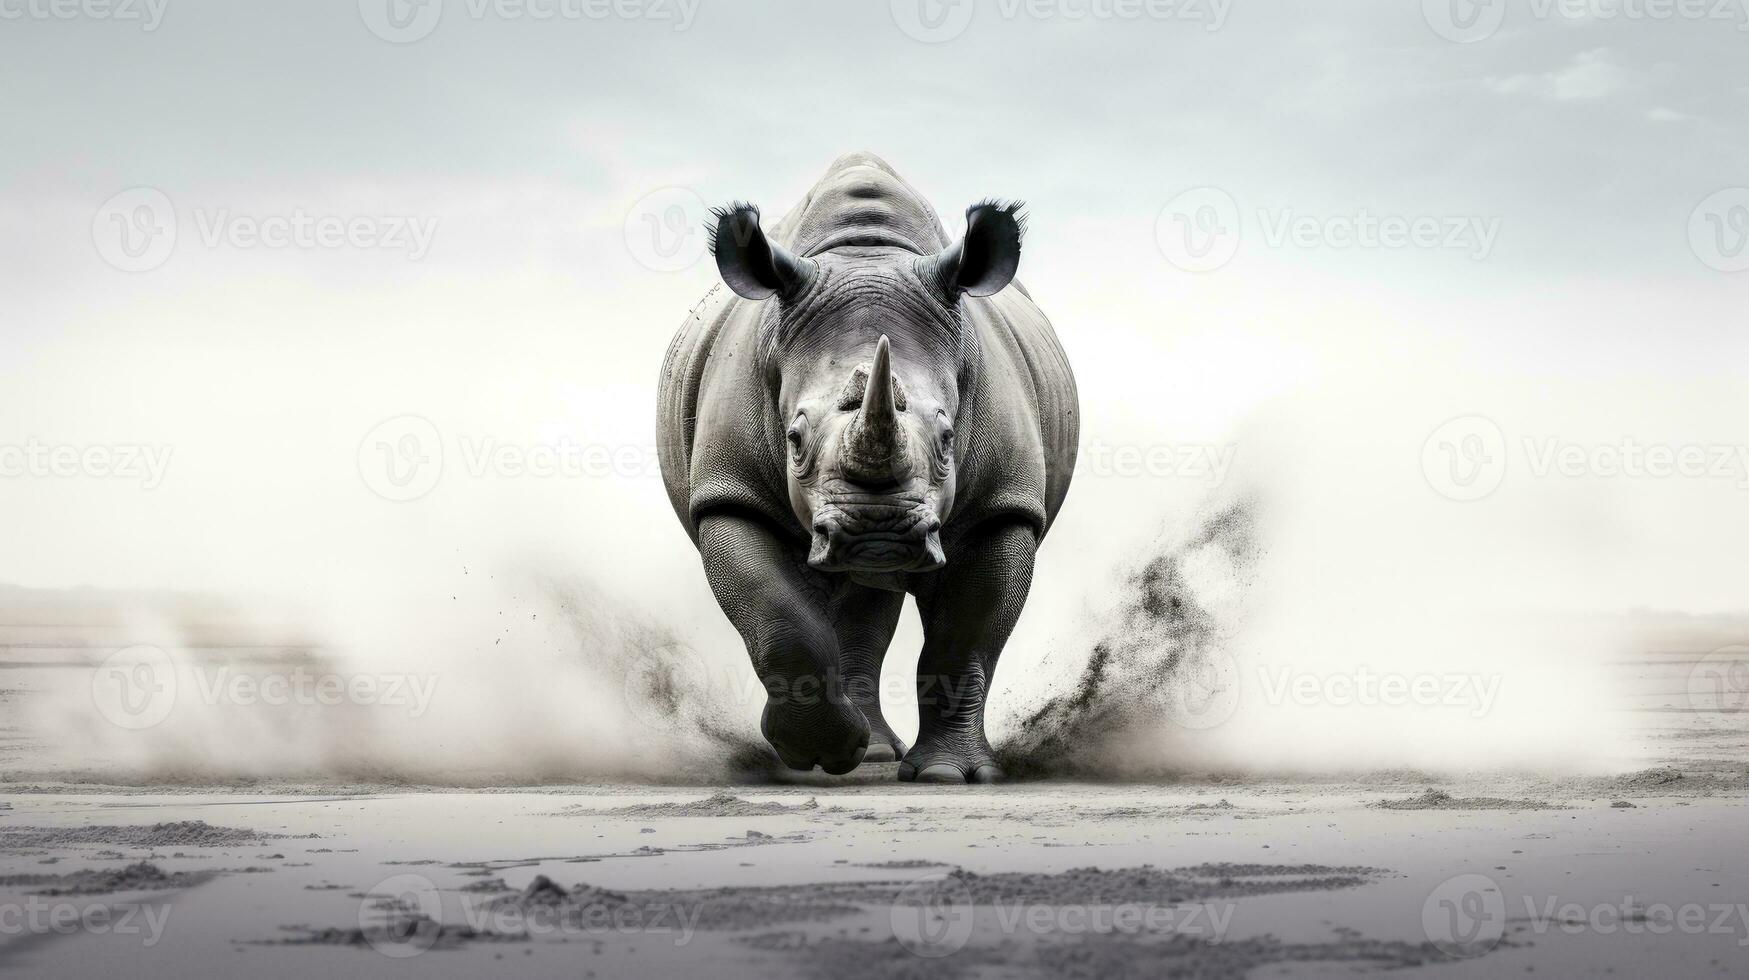 zwart en wit dier poster met een zwart neushoorn in de namibisch woestijn dramatisch tafereel en ontwerp. silhouet concept foto